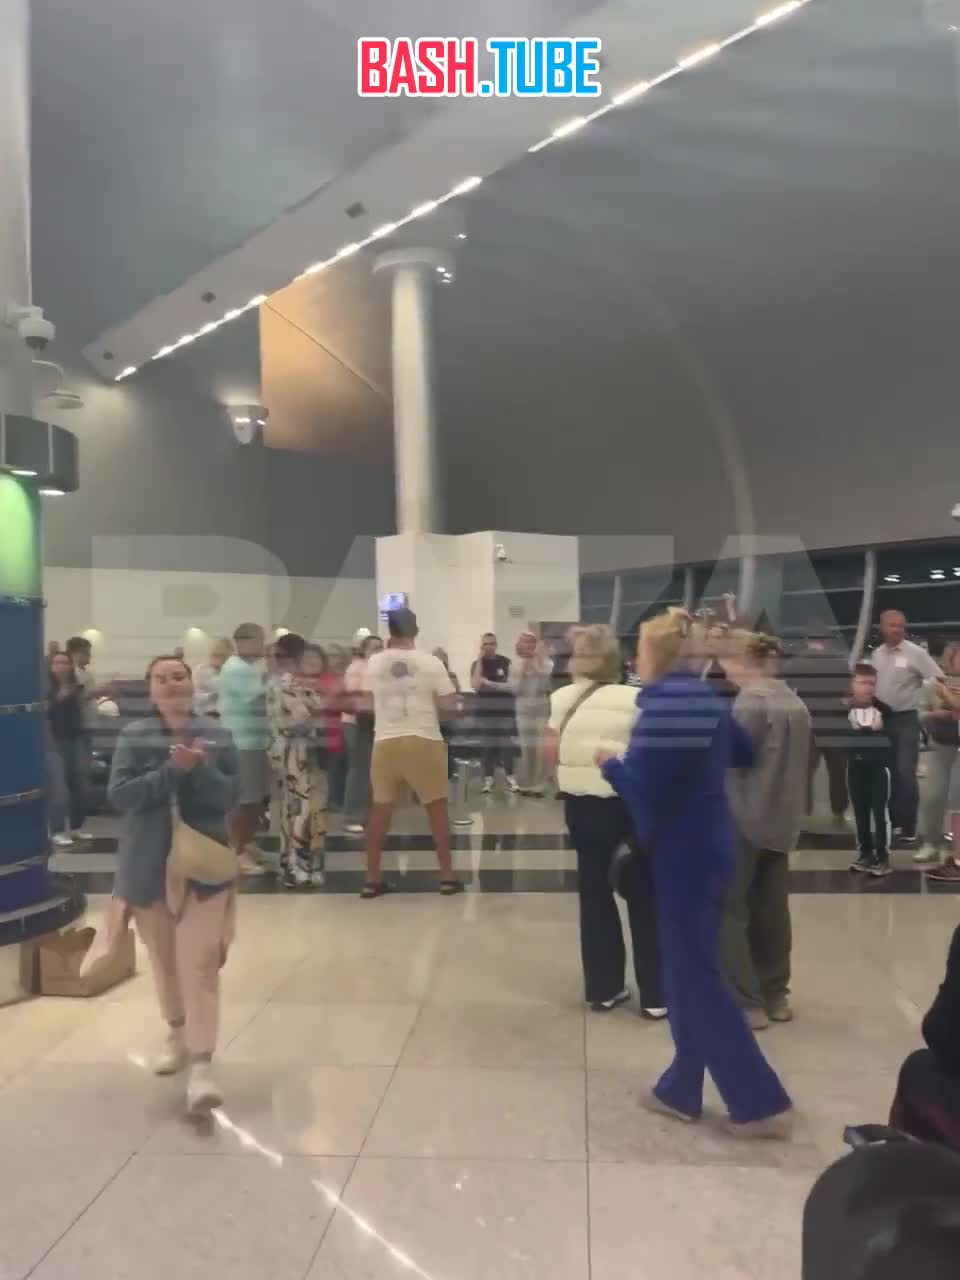  Бунт устроили российские туристы в аэропорту Дубая, которые не могут вылететь из страны уже третьи сутки